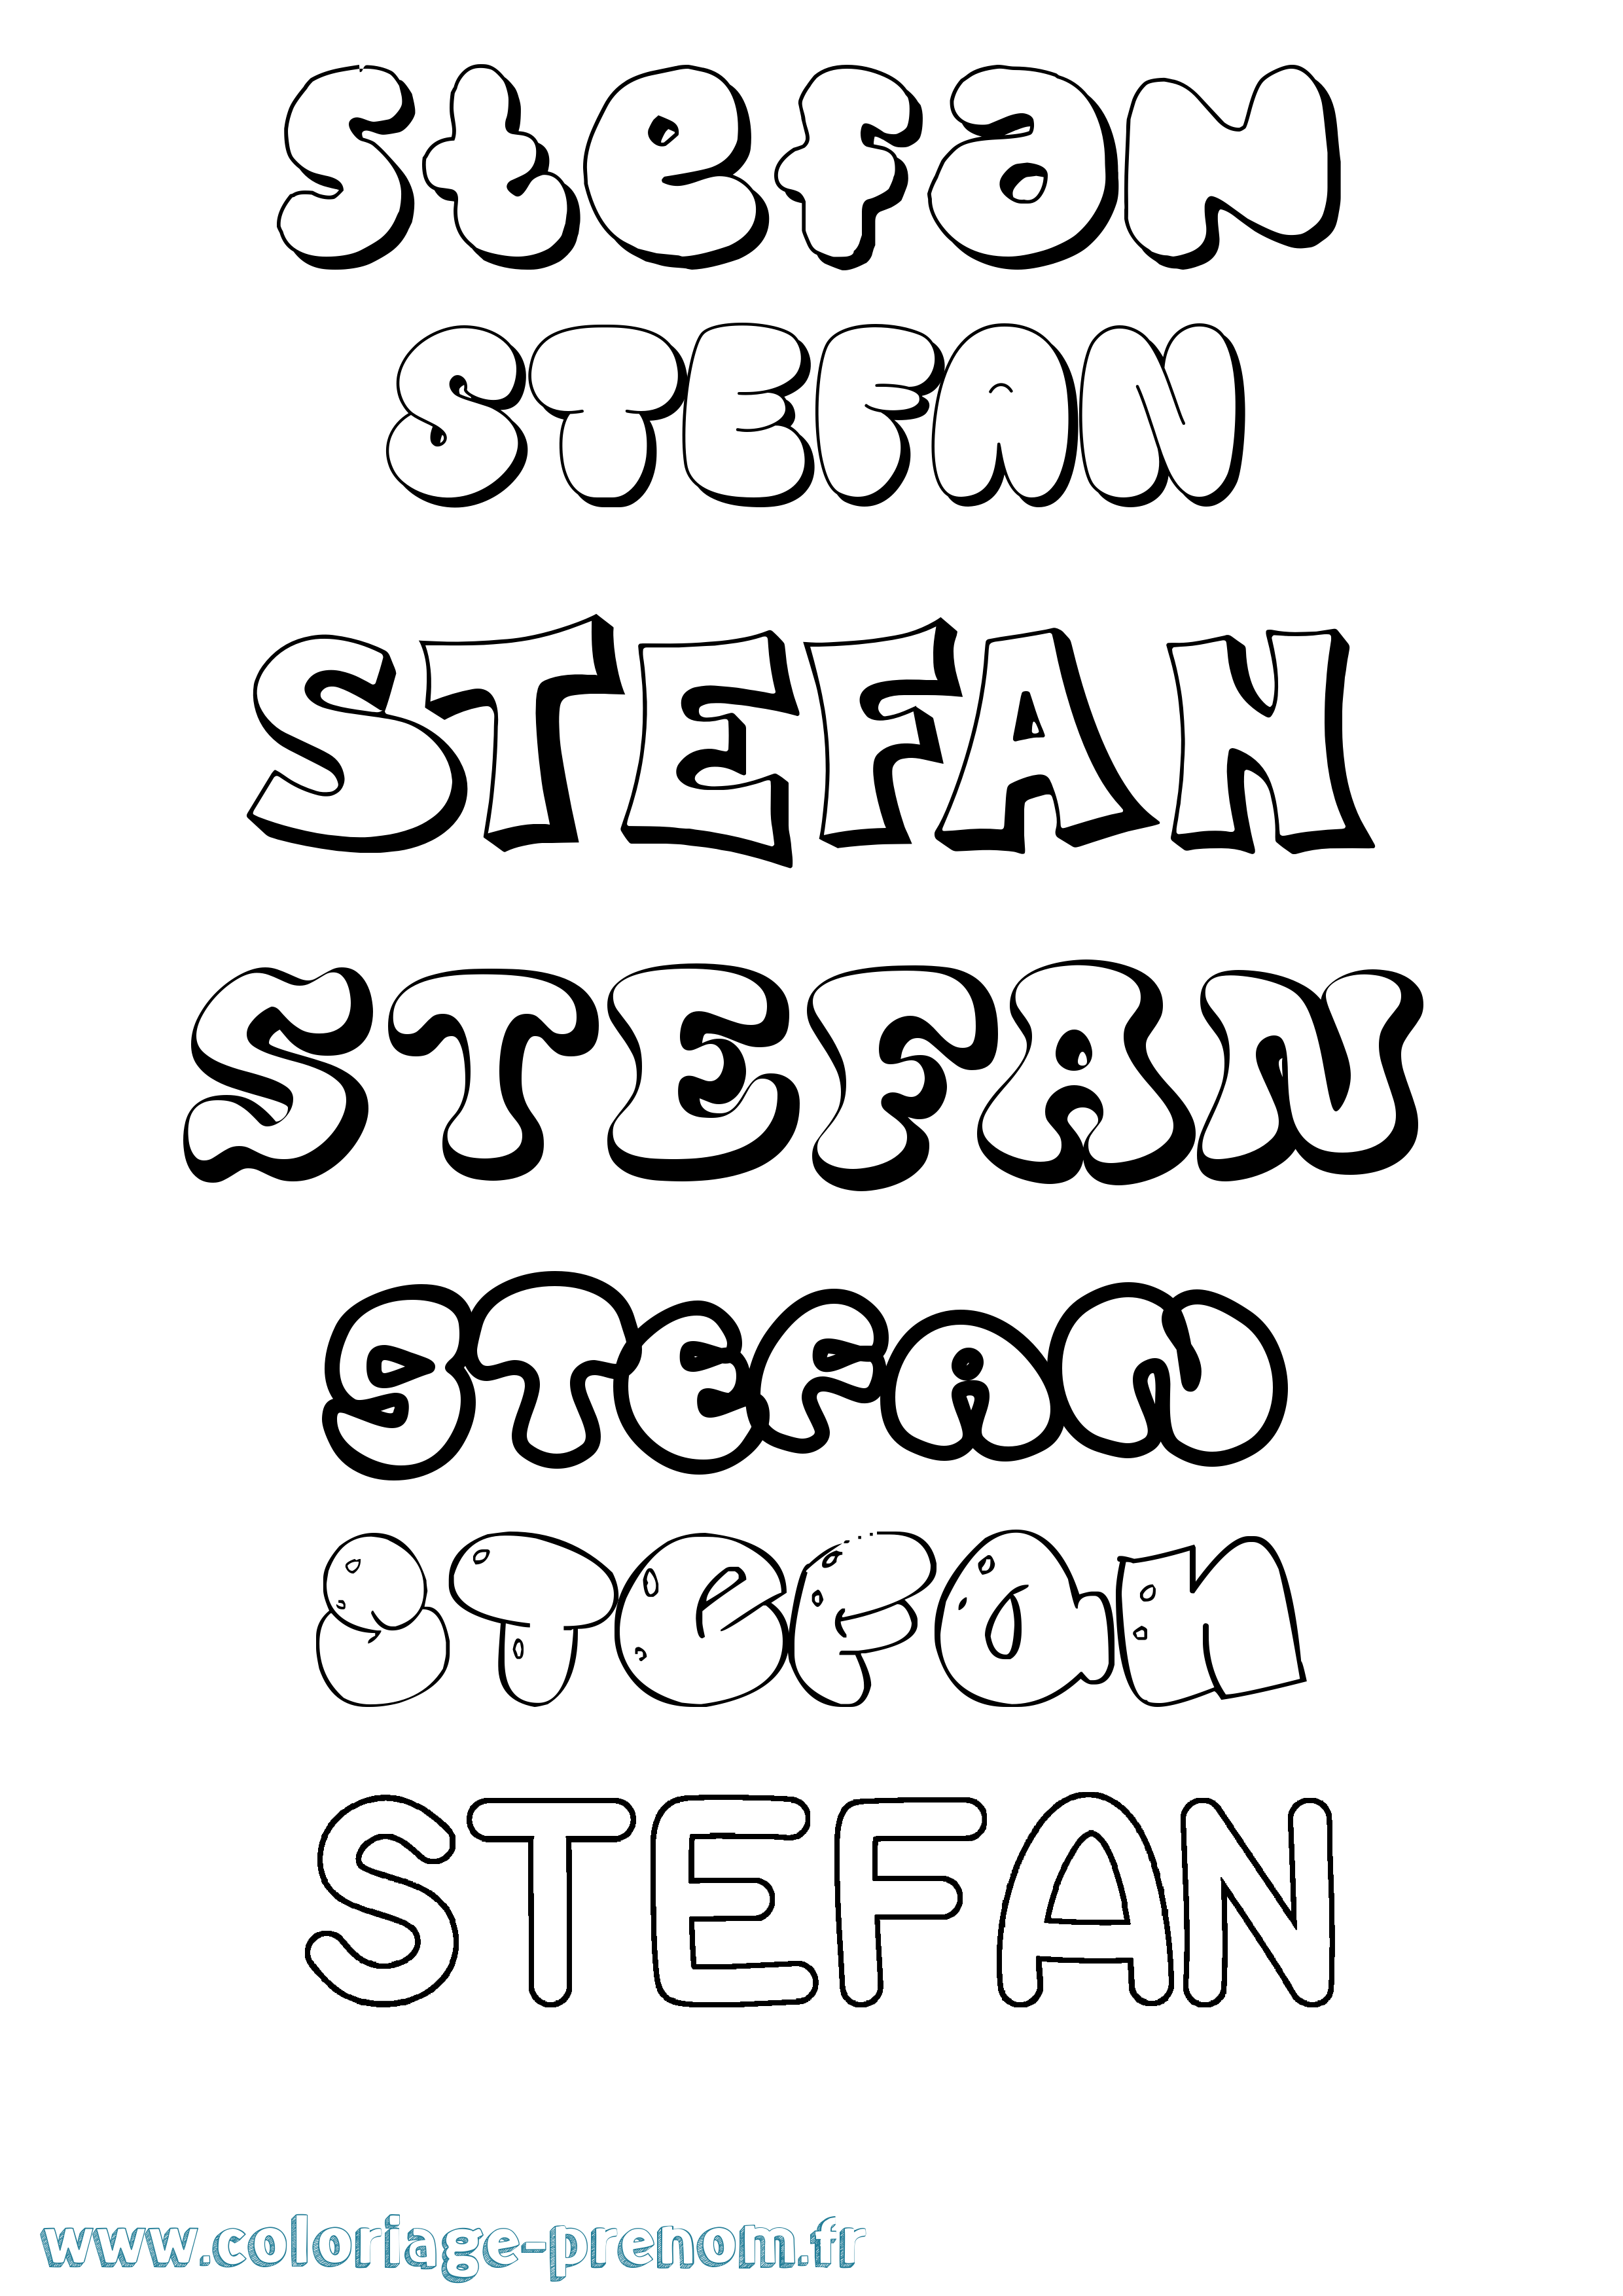 Coloriage prénom Stefan Bubble